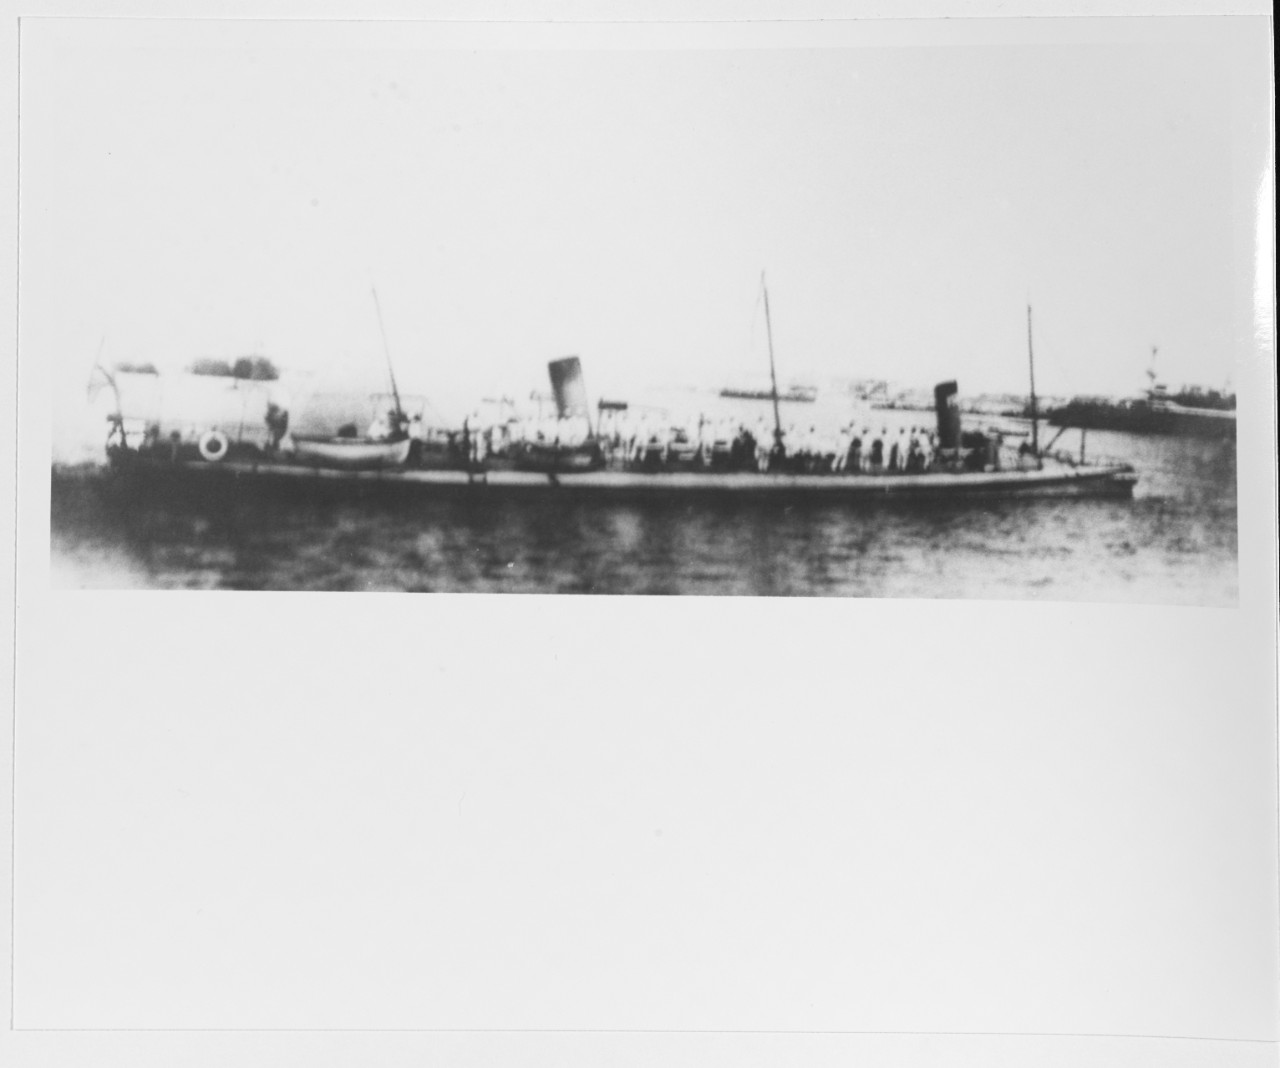 ADLER (Russian Torpedo Boat, 1890-circa 1920)